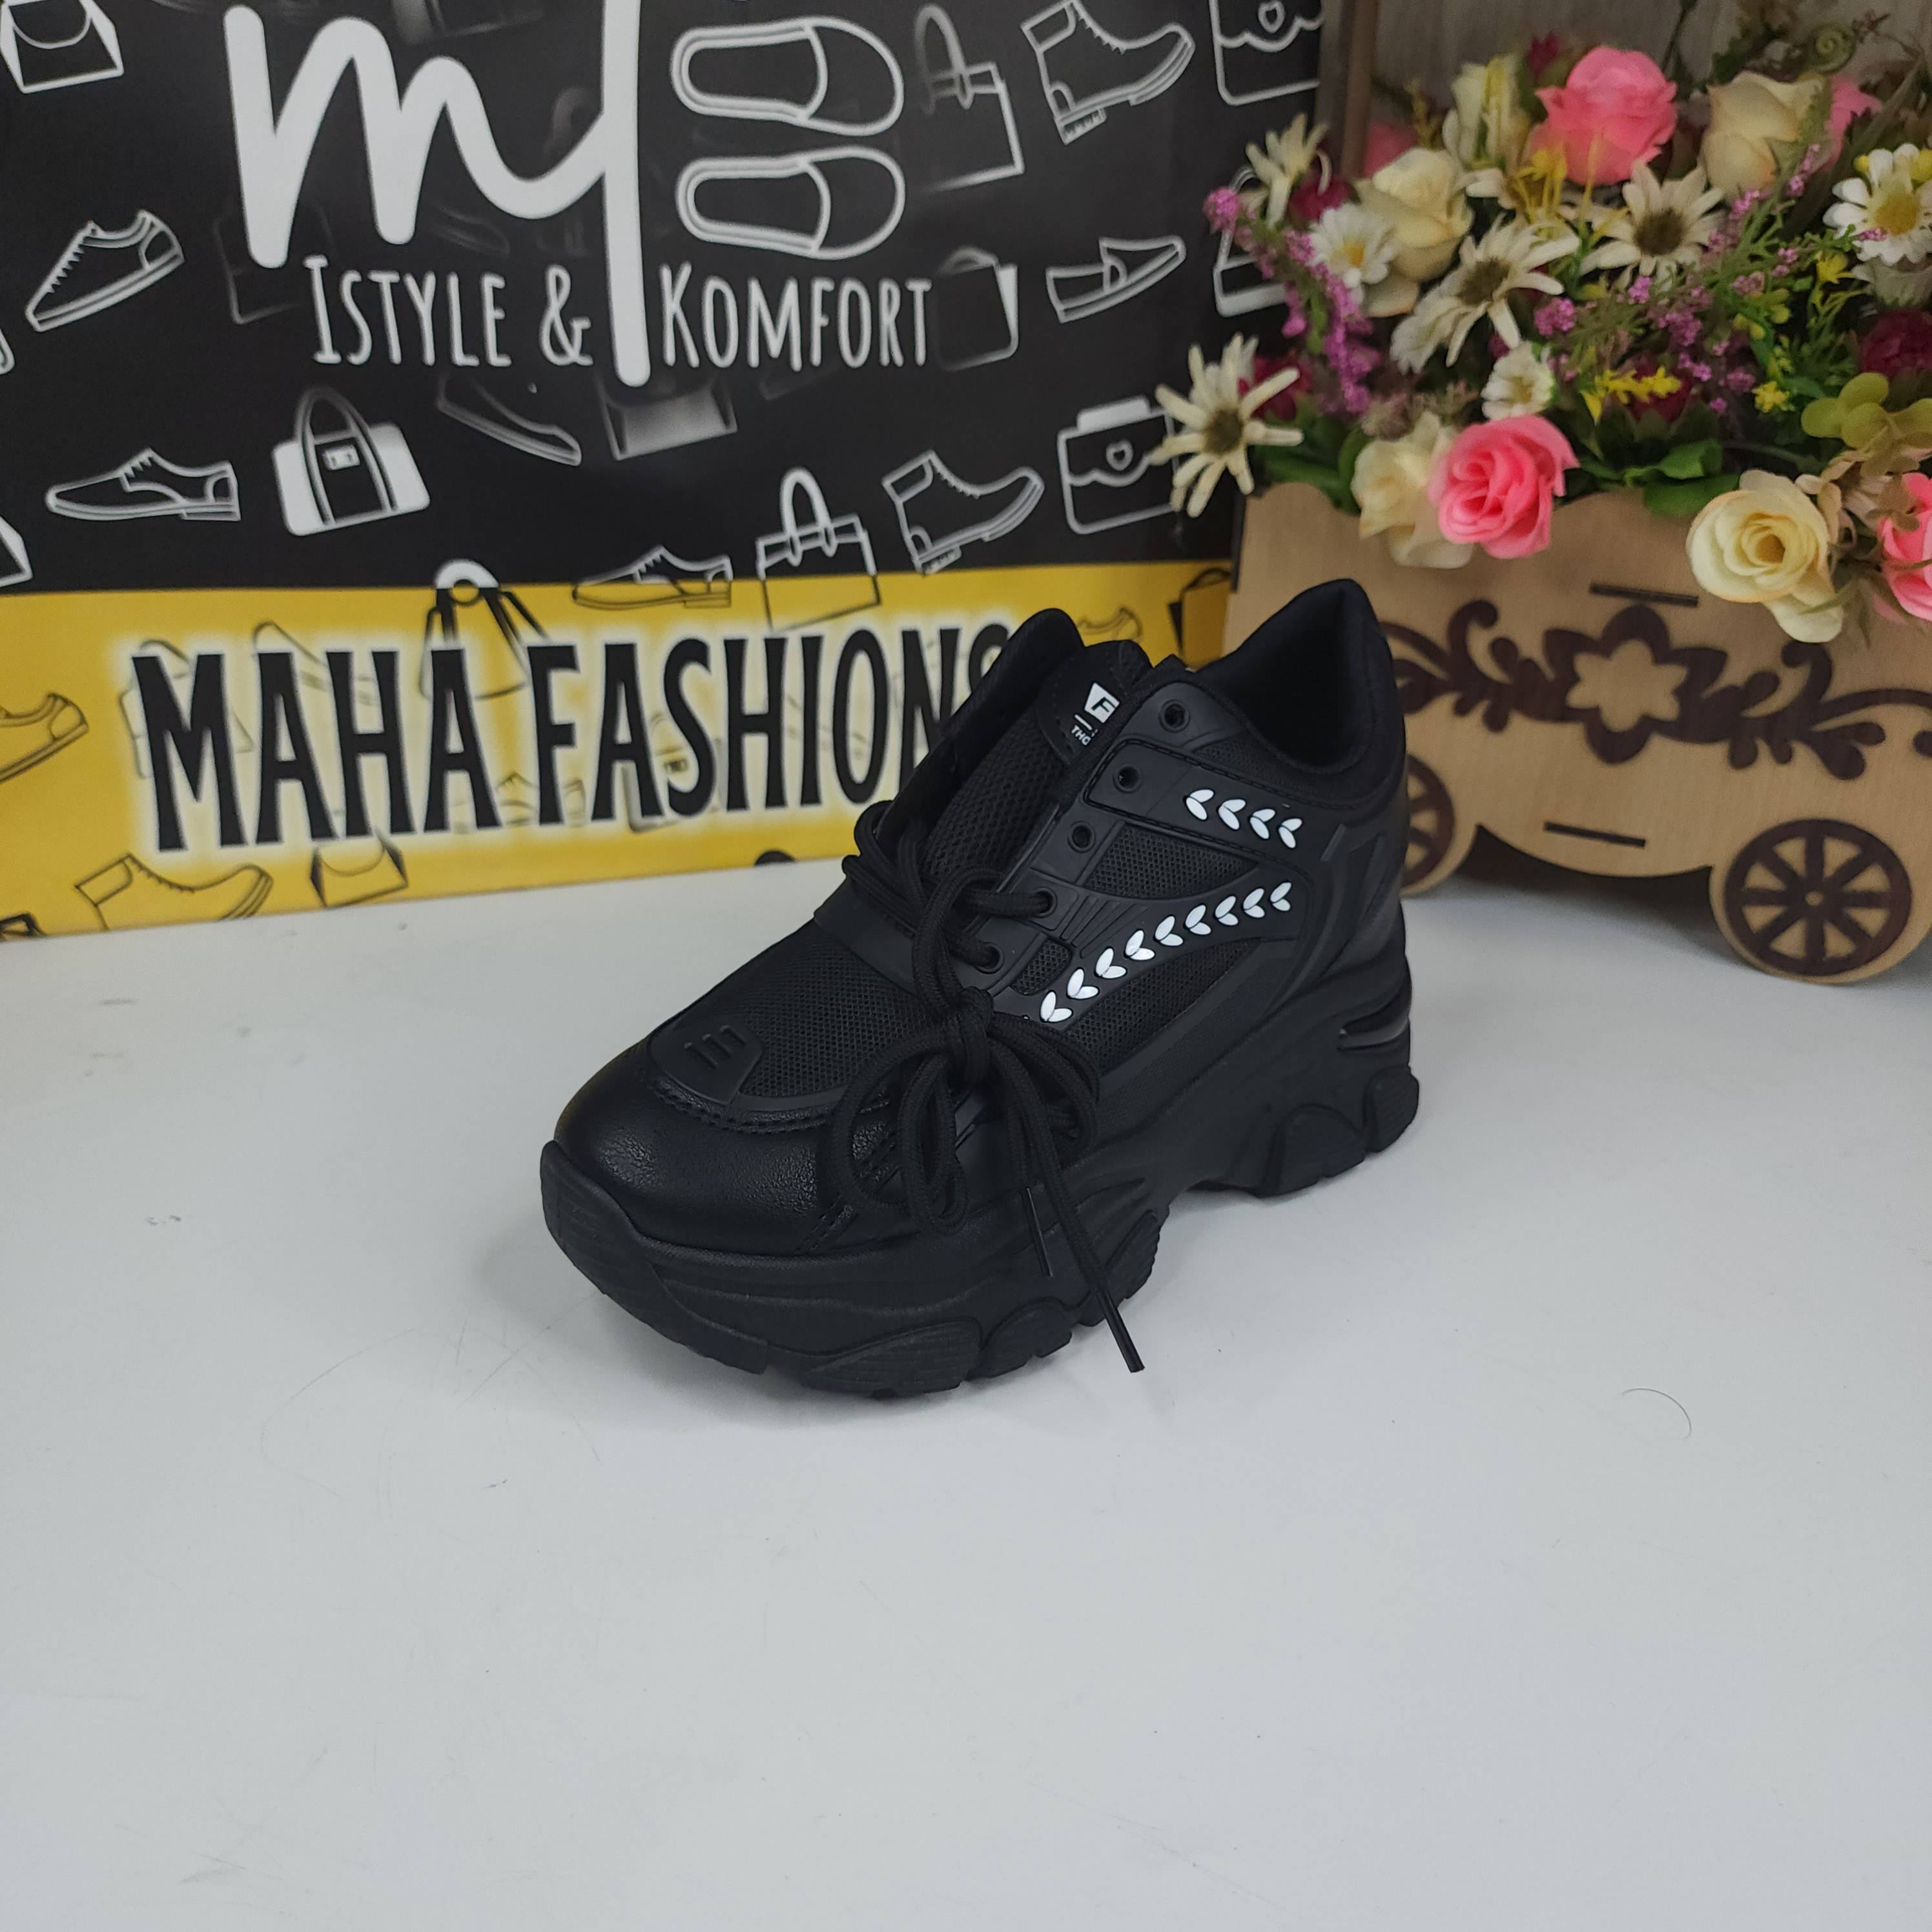 DWD-358 BLACK - Maha fashions -  